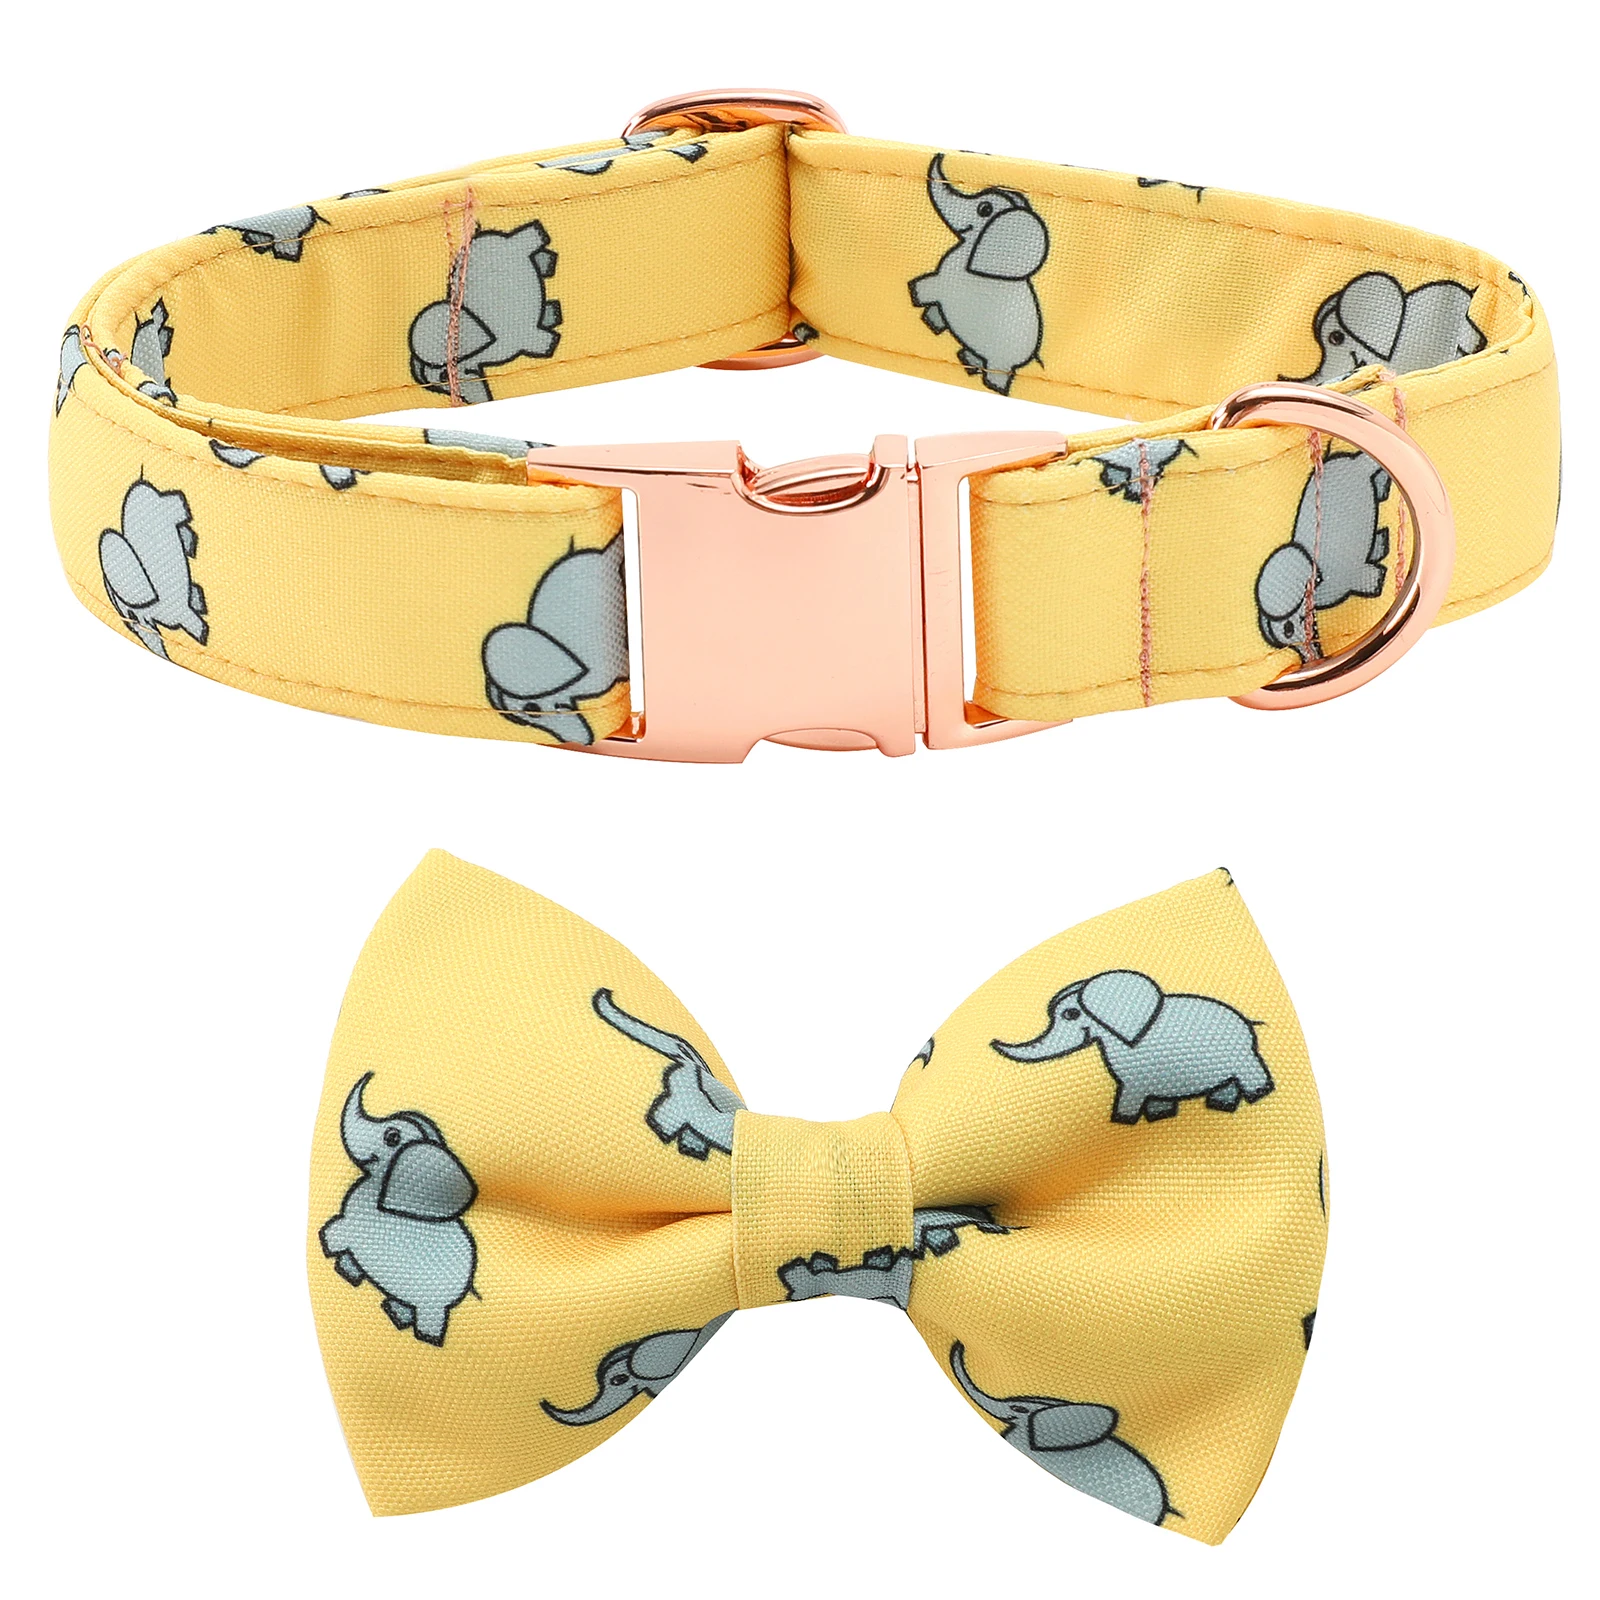 Personalized Dog Collar Bowknot Belt Set Medium Elephant Velvet Belt Size Dog Collar Customized Pet Dog ID